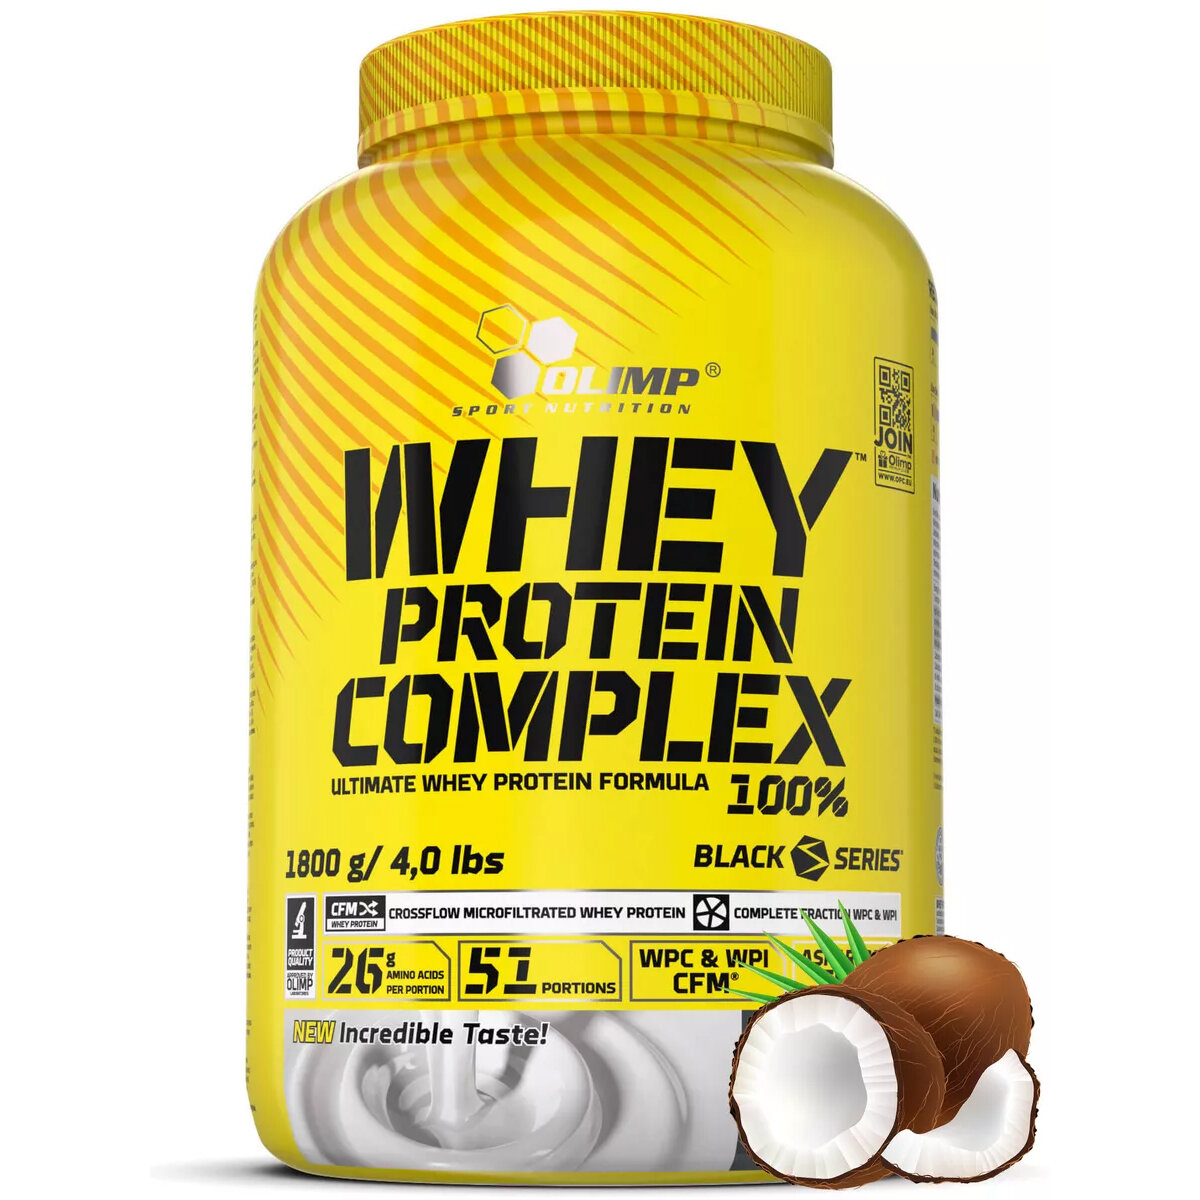 Концентрат и изолят сывороточного белка, протеин Olimp Whey Protein Complex 100%, 1800 г, кокос